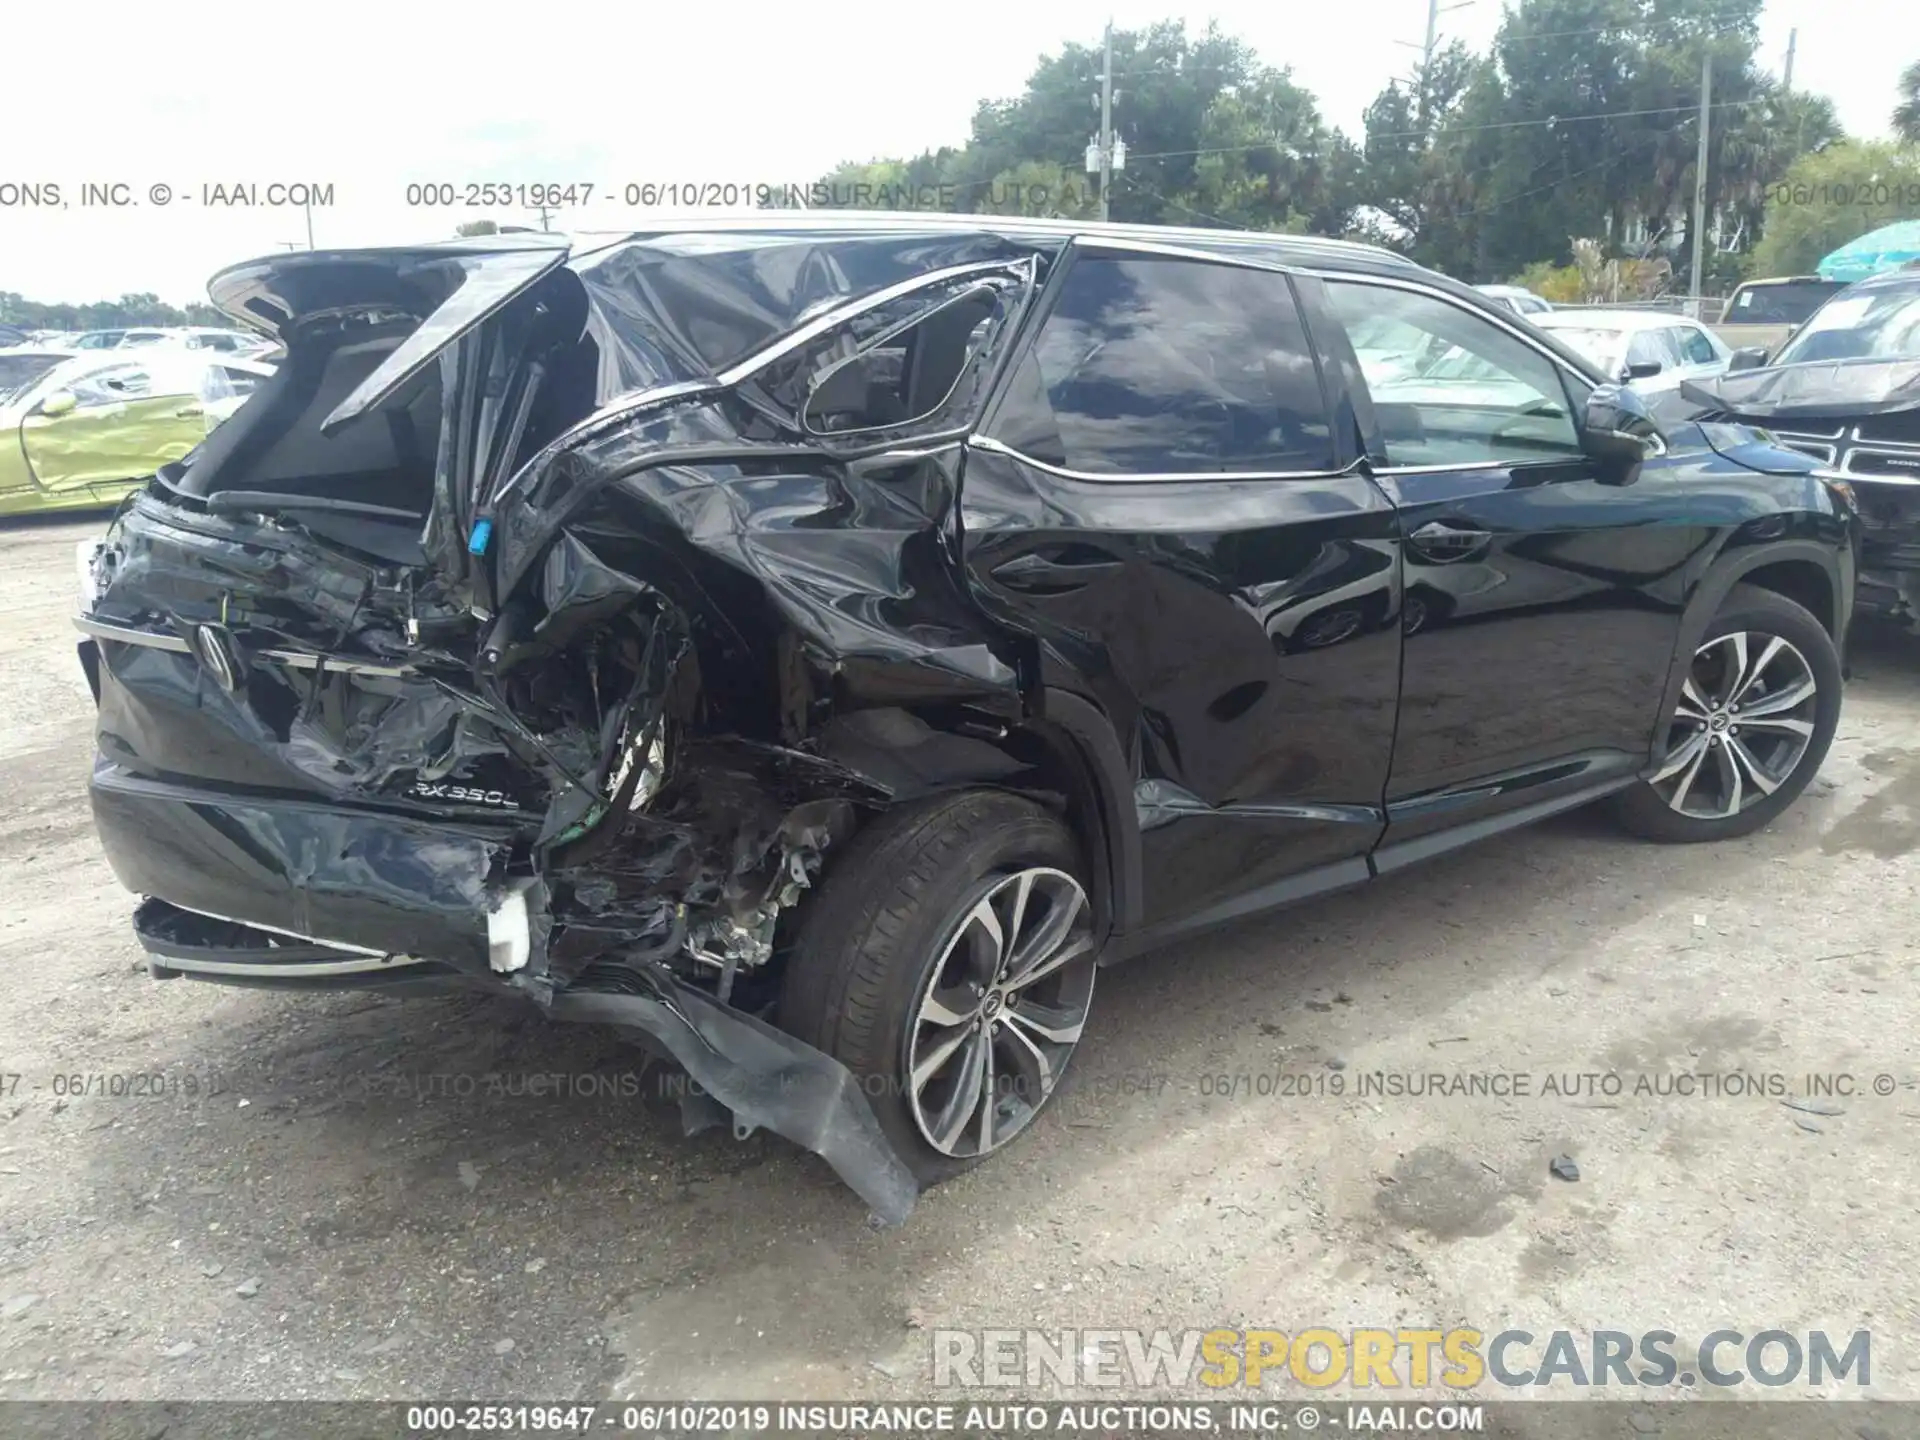 4 Photograph of a damaged car JTJGZKCA6K2010282 LEXUS RX 2019